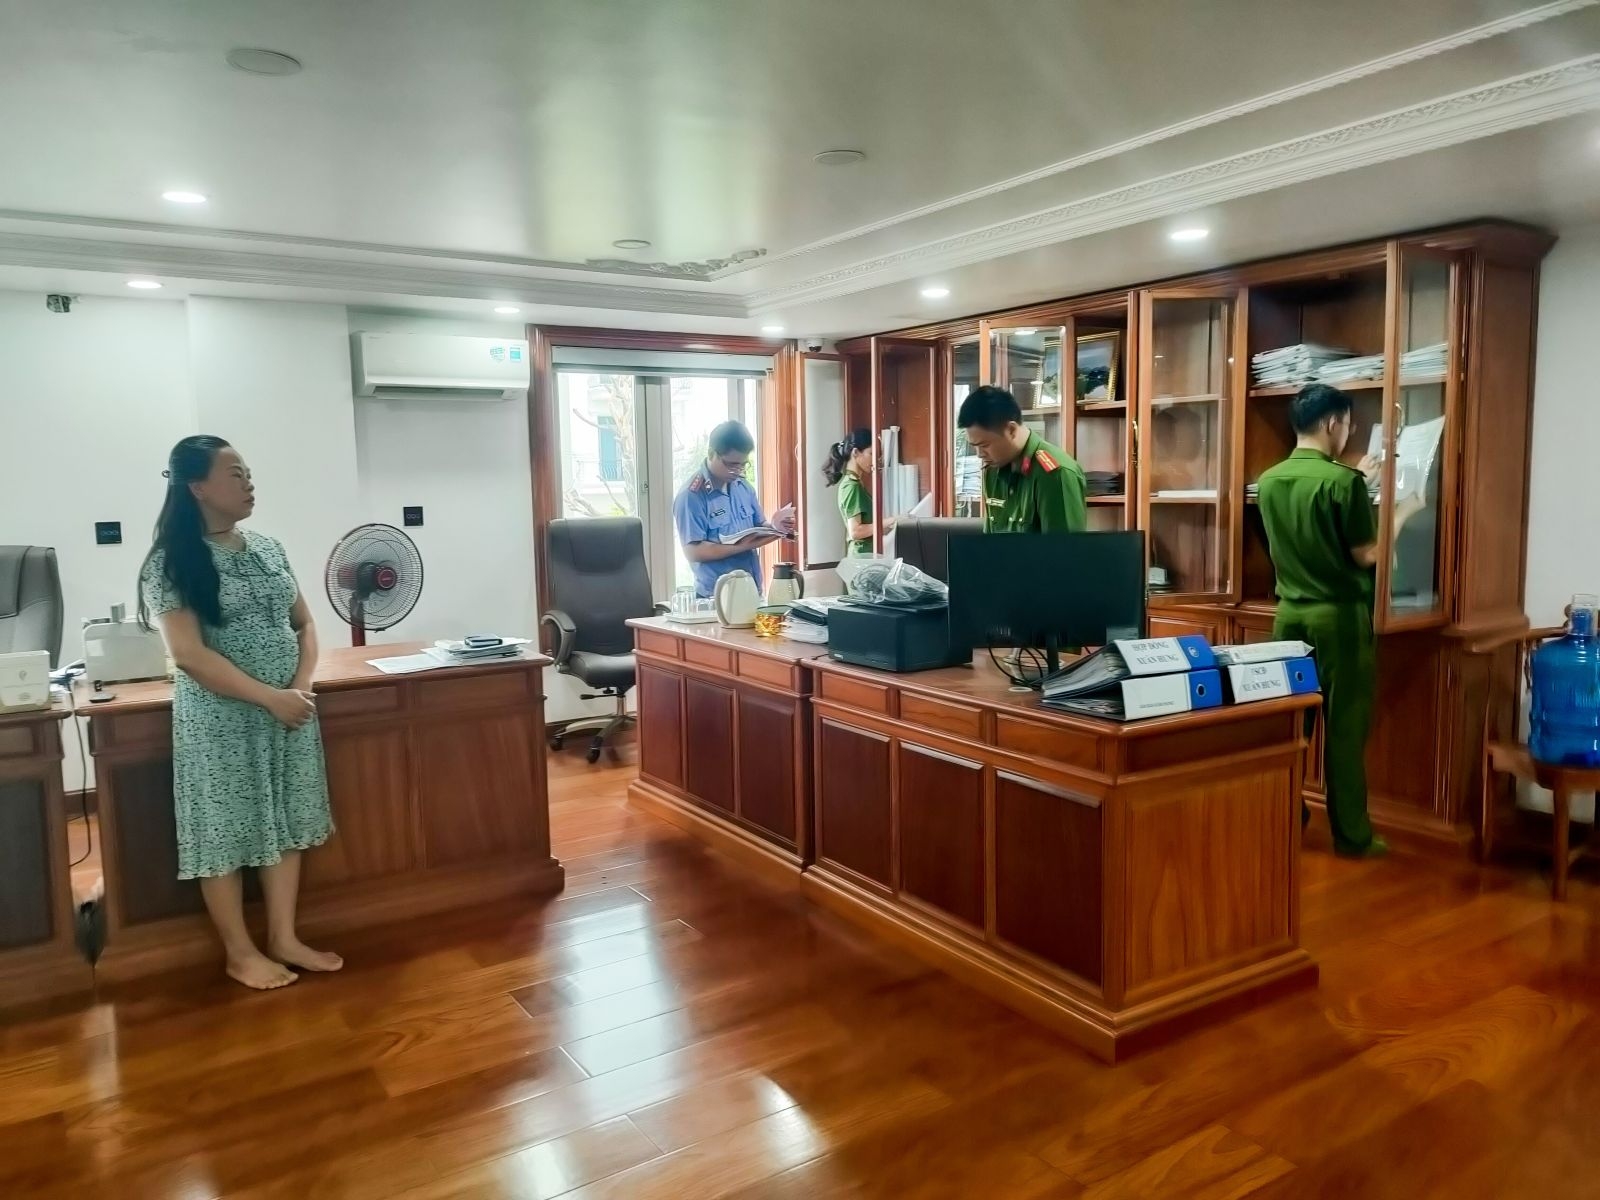 Bắc Giang: Khởi tố bổ sung tội danh đối với các bị can trong vụ “Vi phạm quy định về nghiên cứu, thăm dò, khai thác tài nguyên”